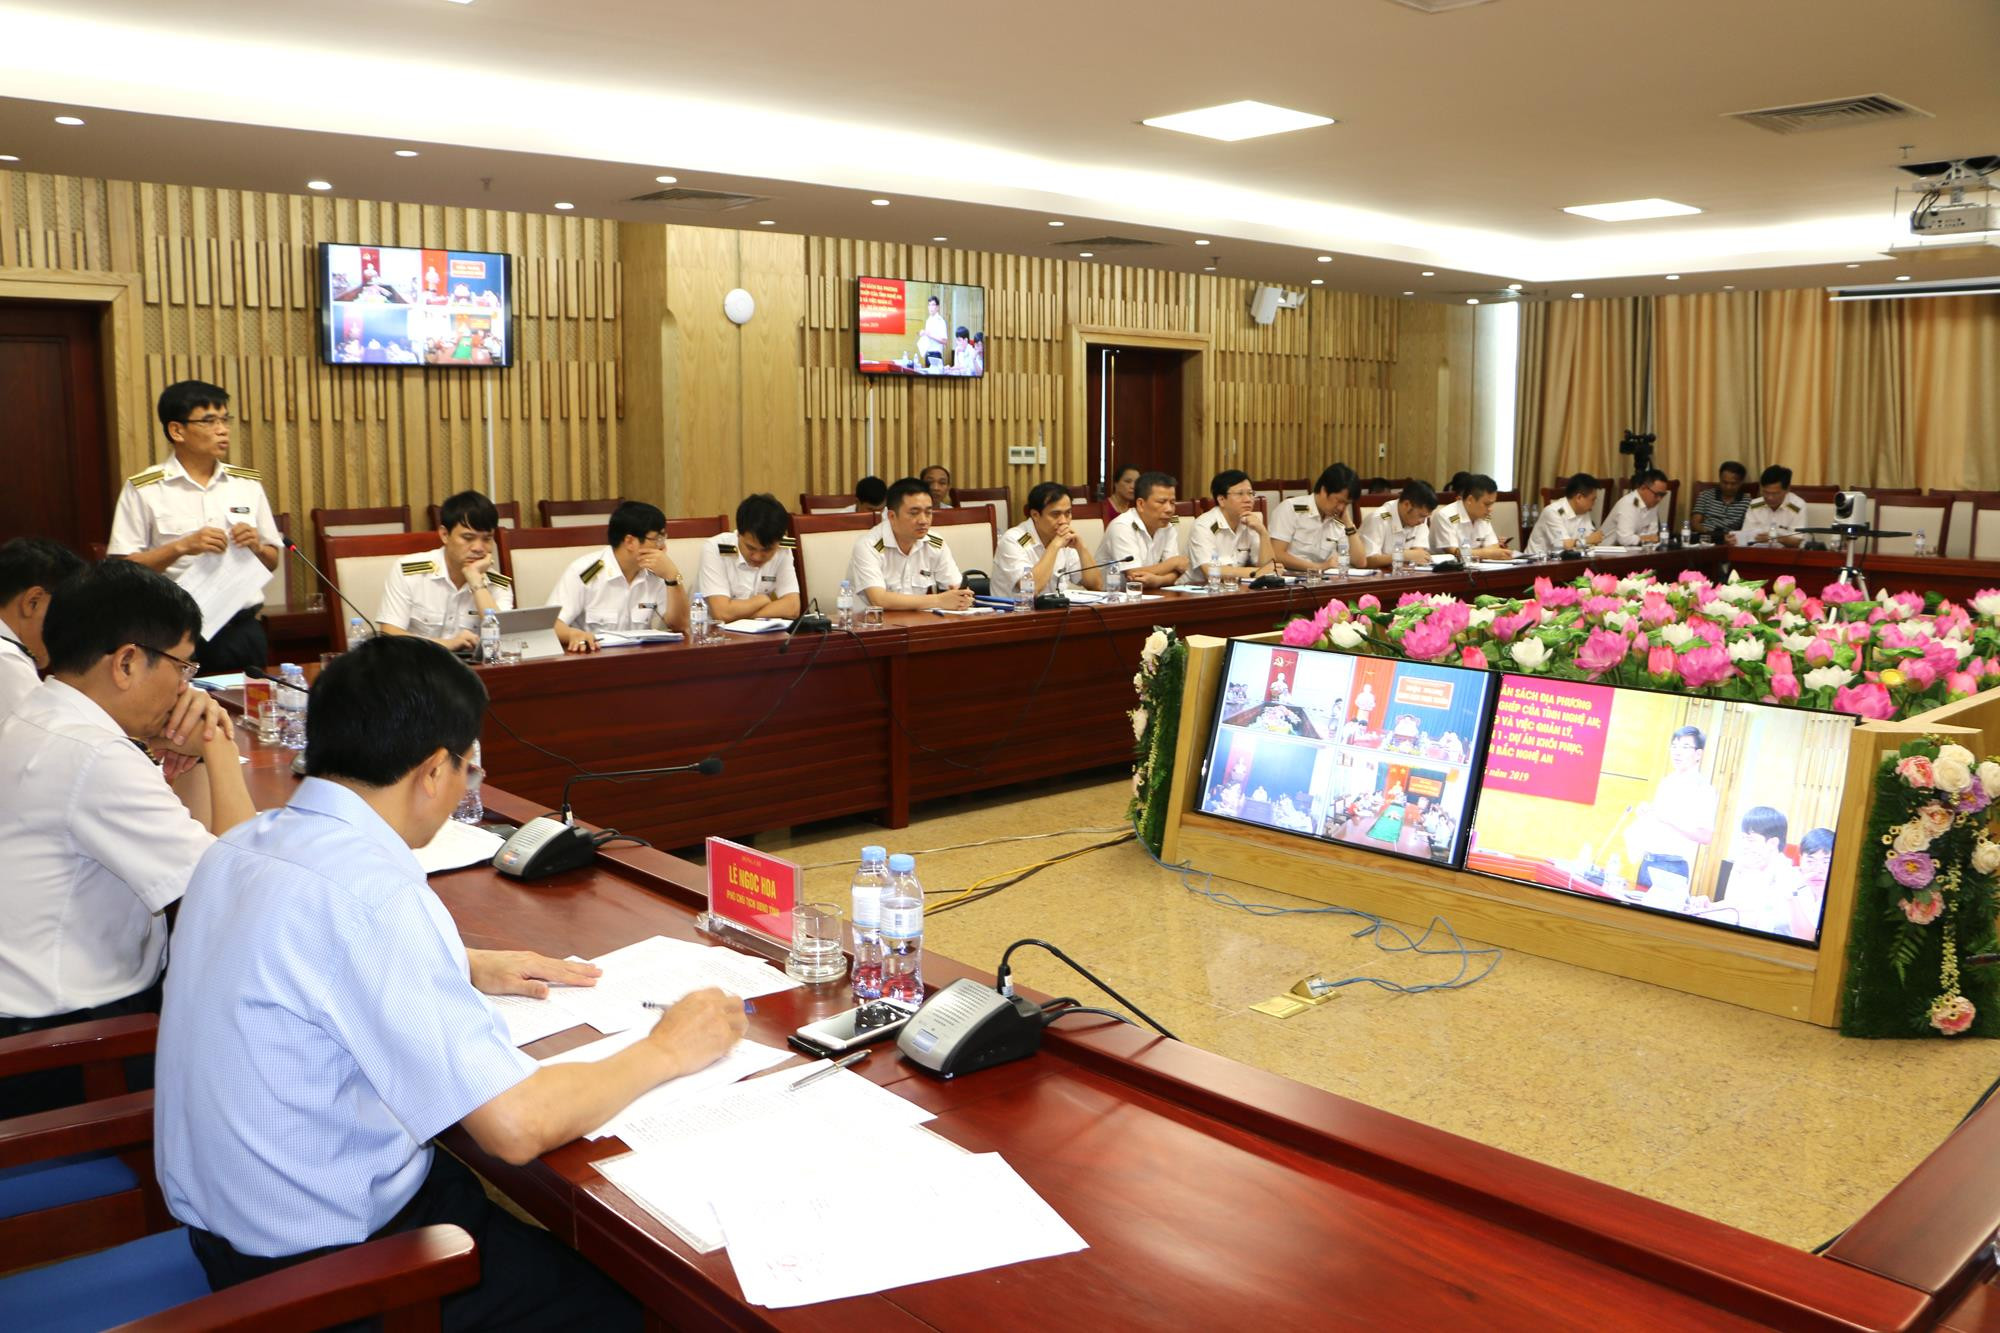 Theo dõi hội nghị trực tuyến còn có các điểm cầu từ các huyện, thành thị trên địa bàn tỉnh Nghệ An. Ảnh: Nguyễn Hải